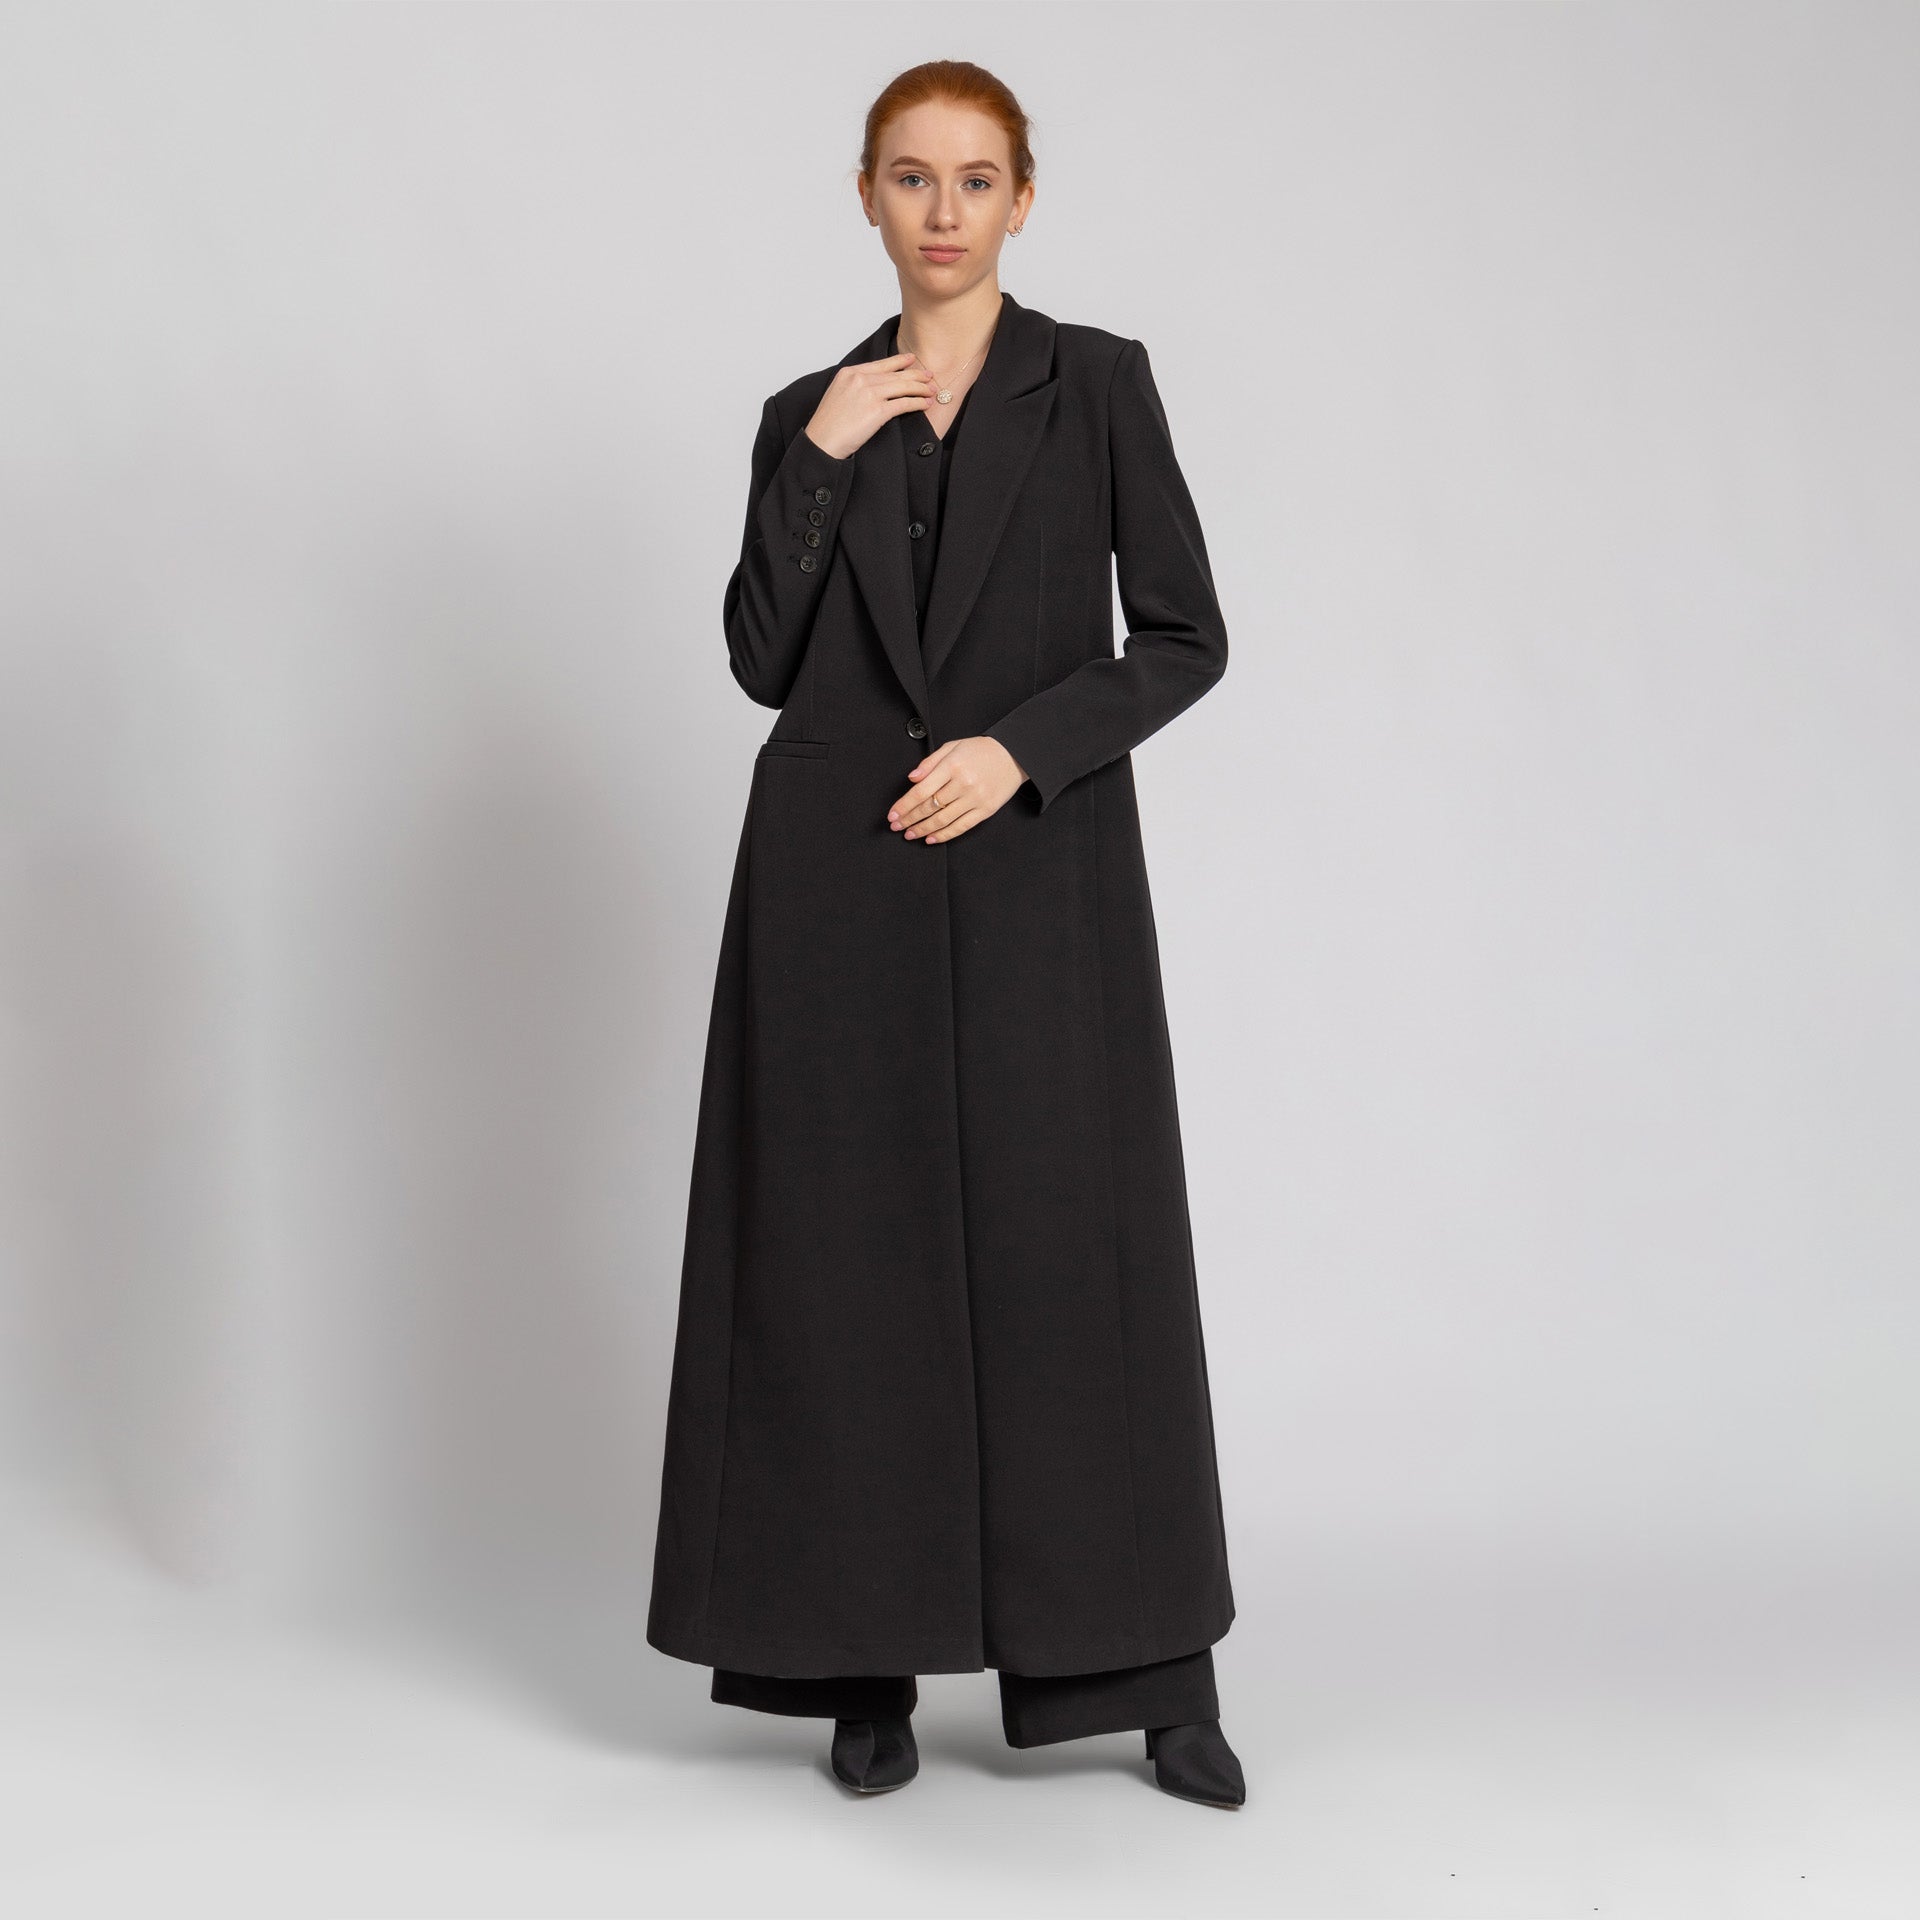 Black Crepe Suit Abaya From Elanove